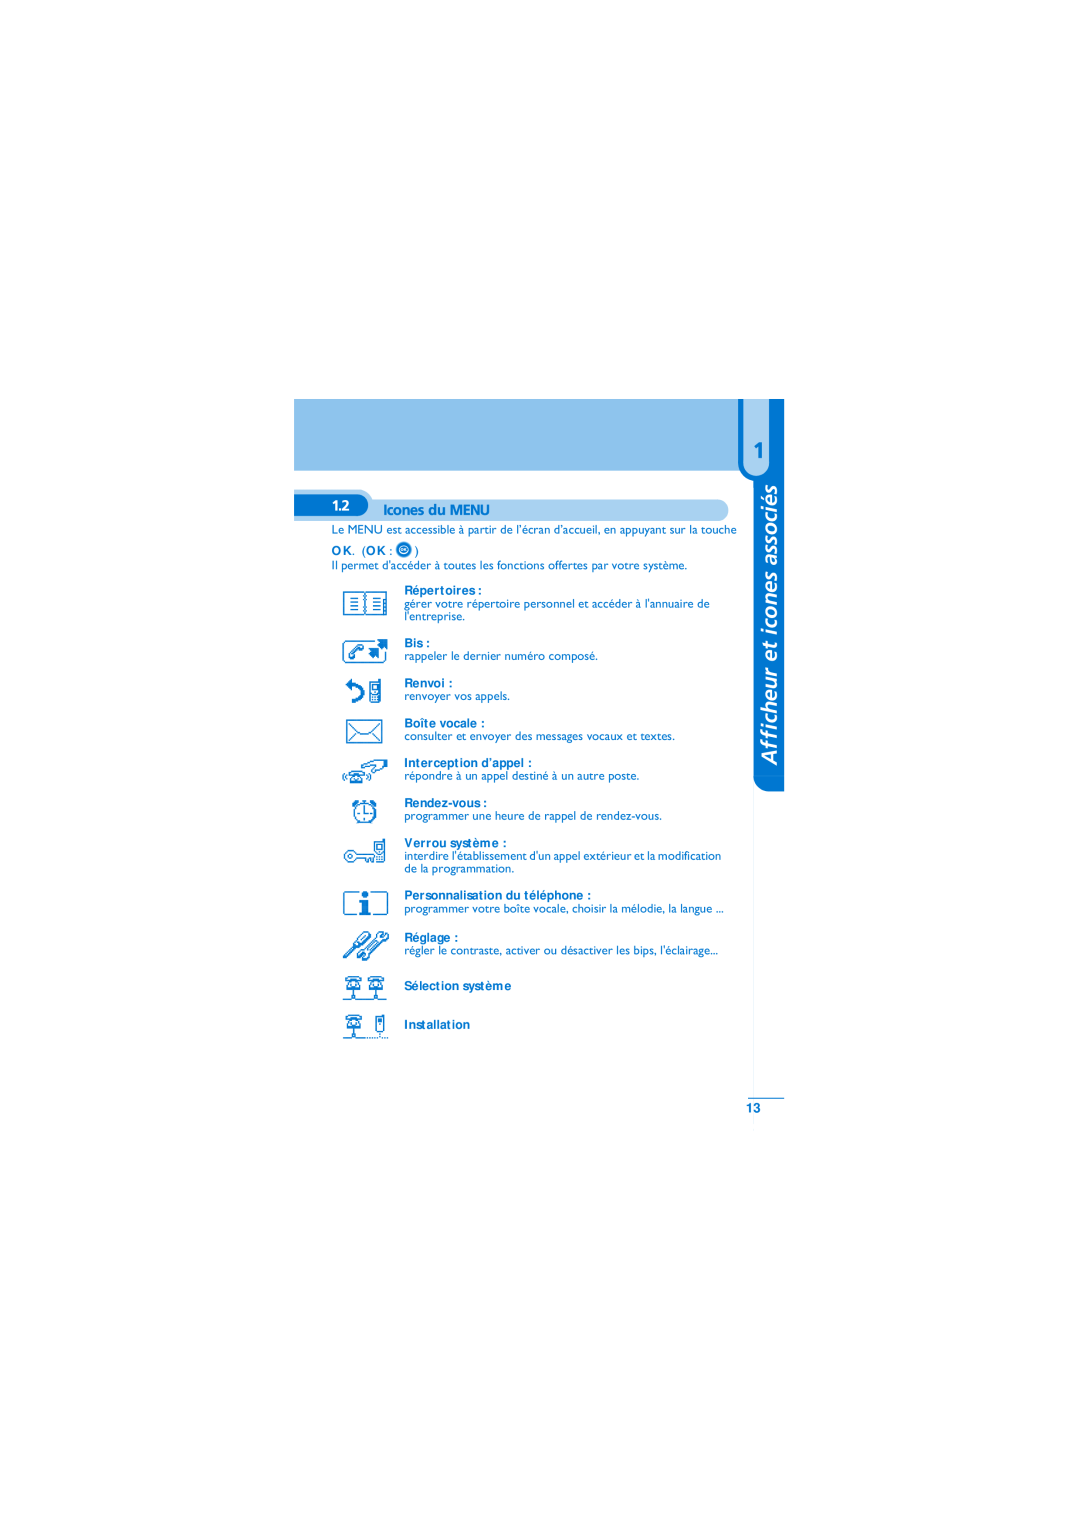 Alcatel-Lucent Mobile Reflexes 100 manual Afficheur et icones associés, Icones du MENU, Répertoires, Renvoi, Boîte vocale 